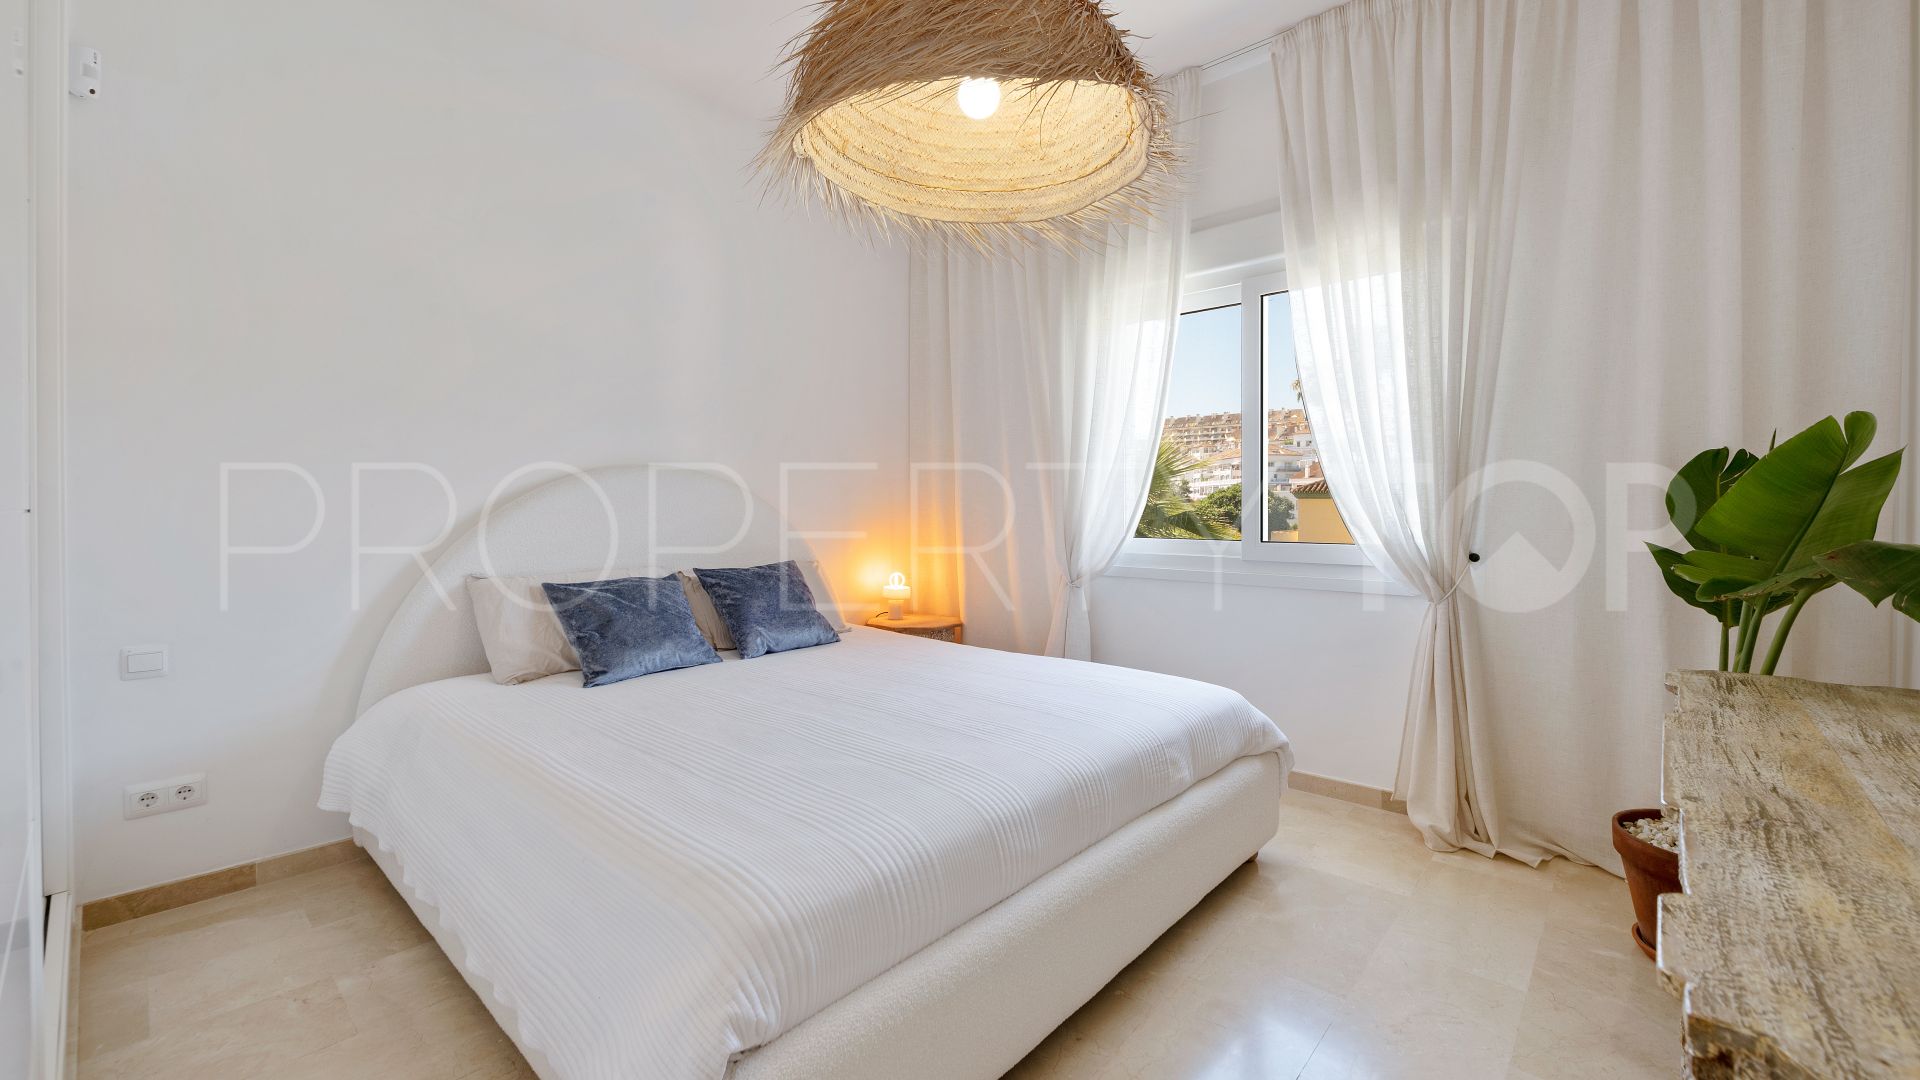 6 bedrooms villa in Atalaya de Rio Verde for sale